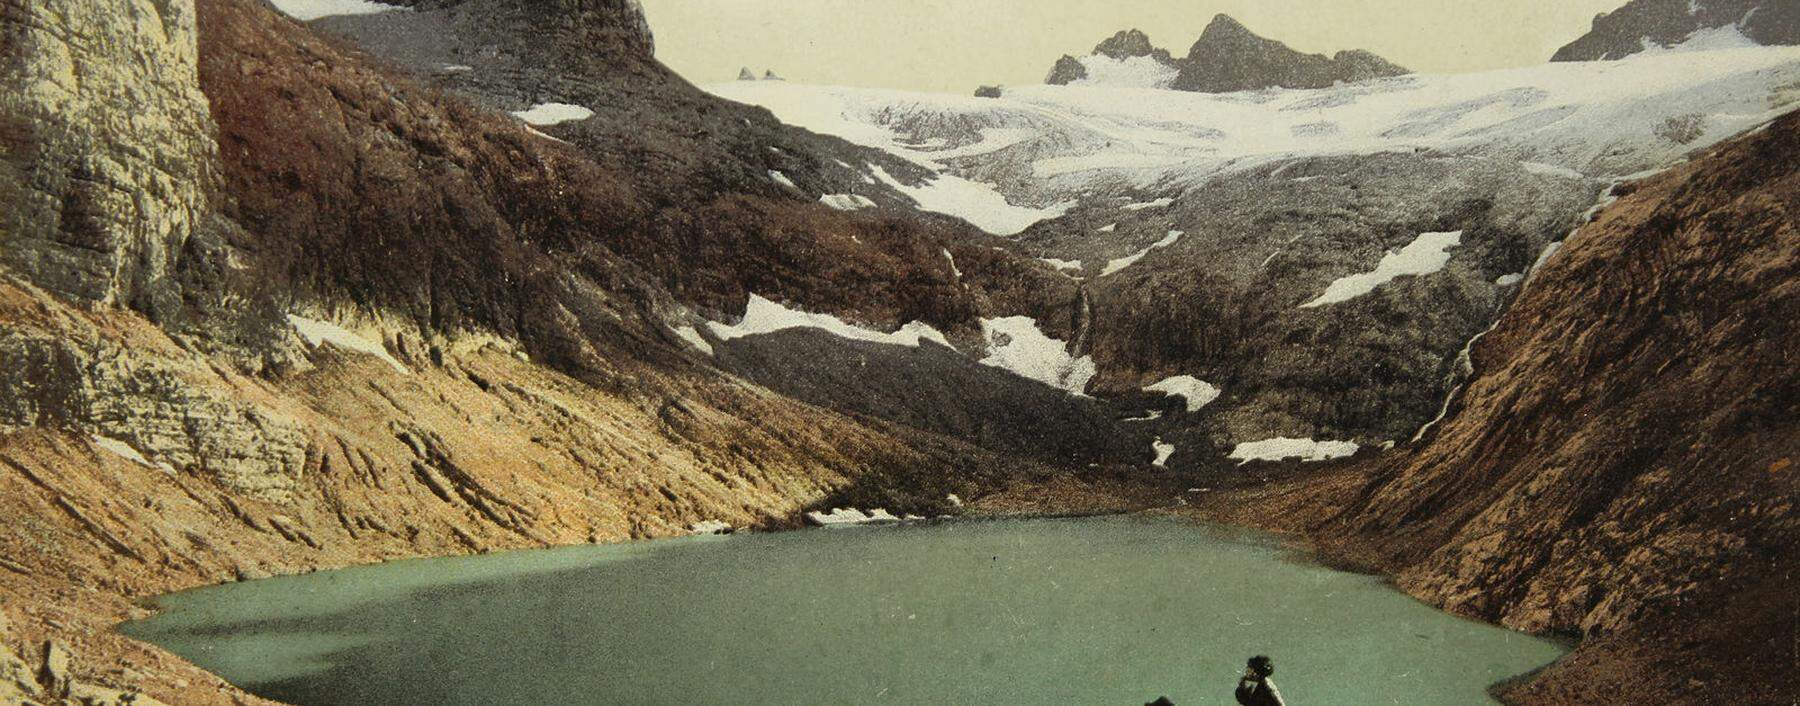 Postkarte von 1906 mit Dachstein, Gletschersee und Karlseisfeld. Und staunenden Wanderern. 